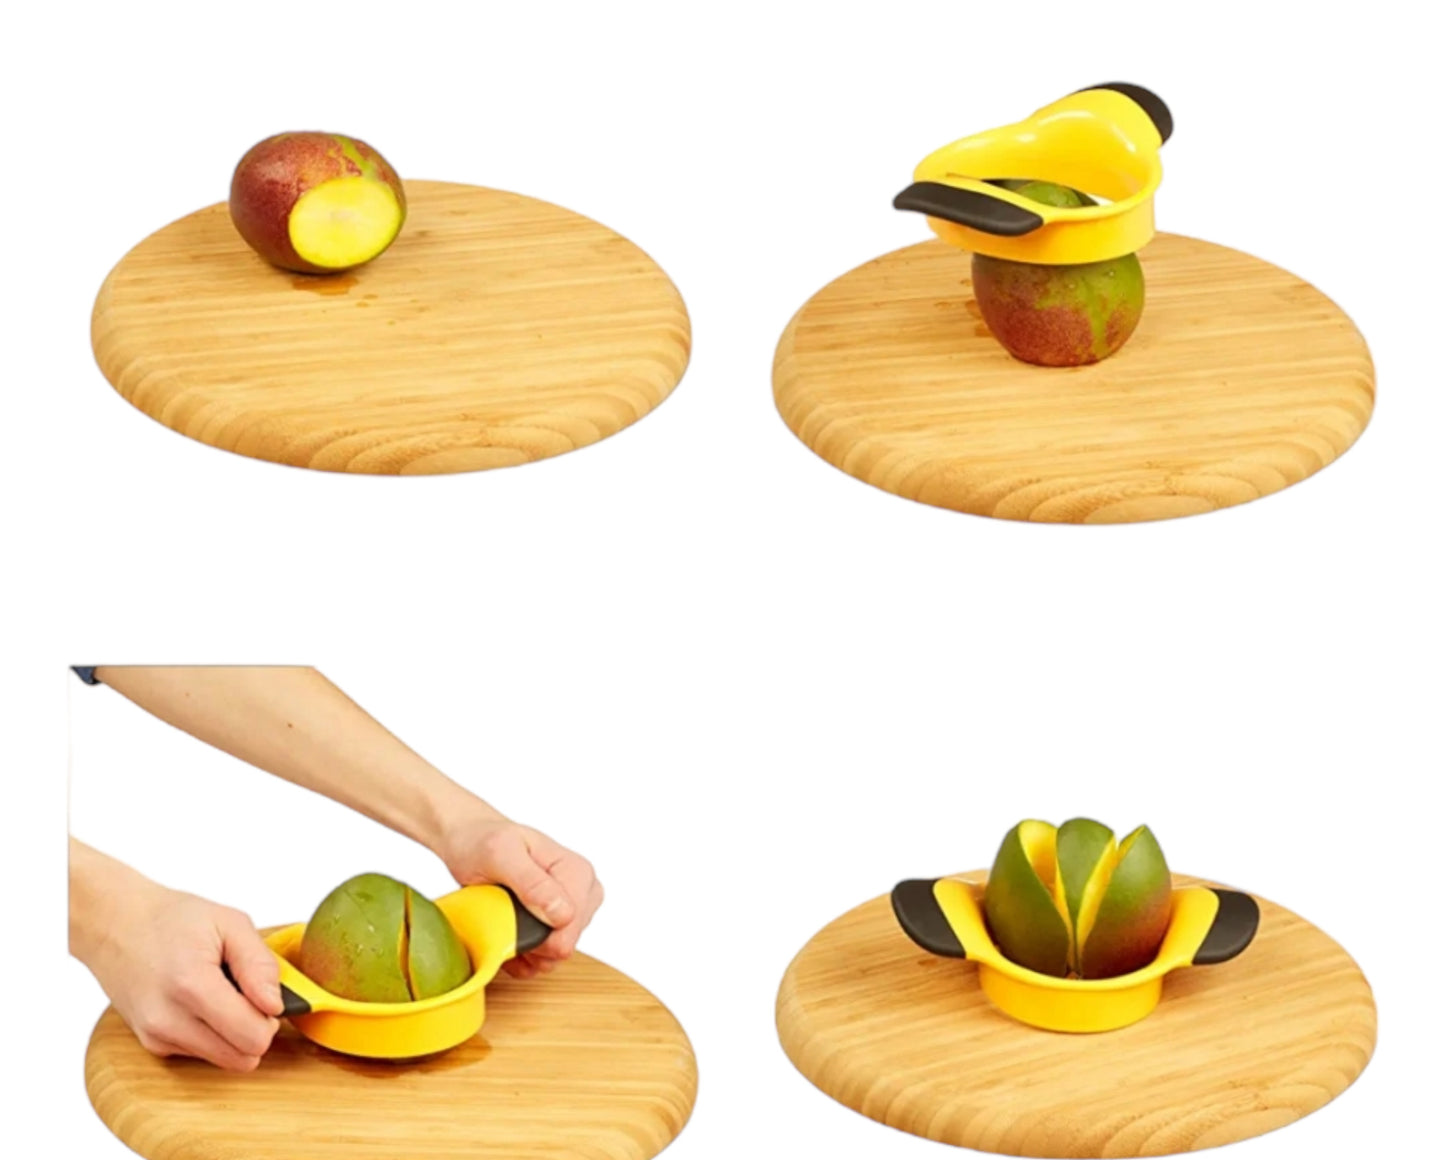 Mangoschneider, Mango teilen & entkernen, rutschfester Griff, Edelstahl-Klinge, Mango Slicer, schwarz-gelb, 1 Stück